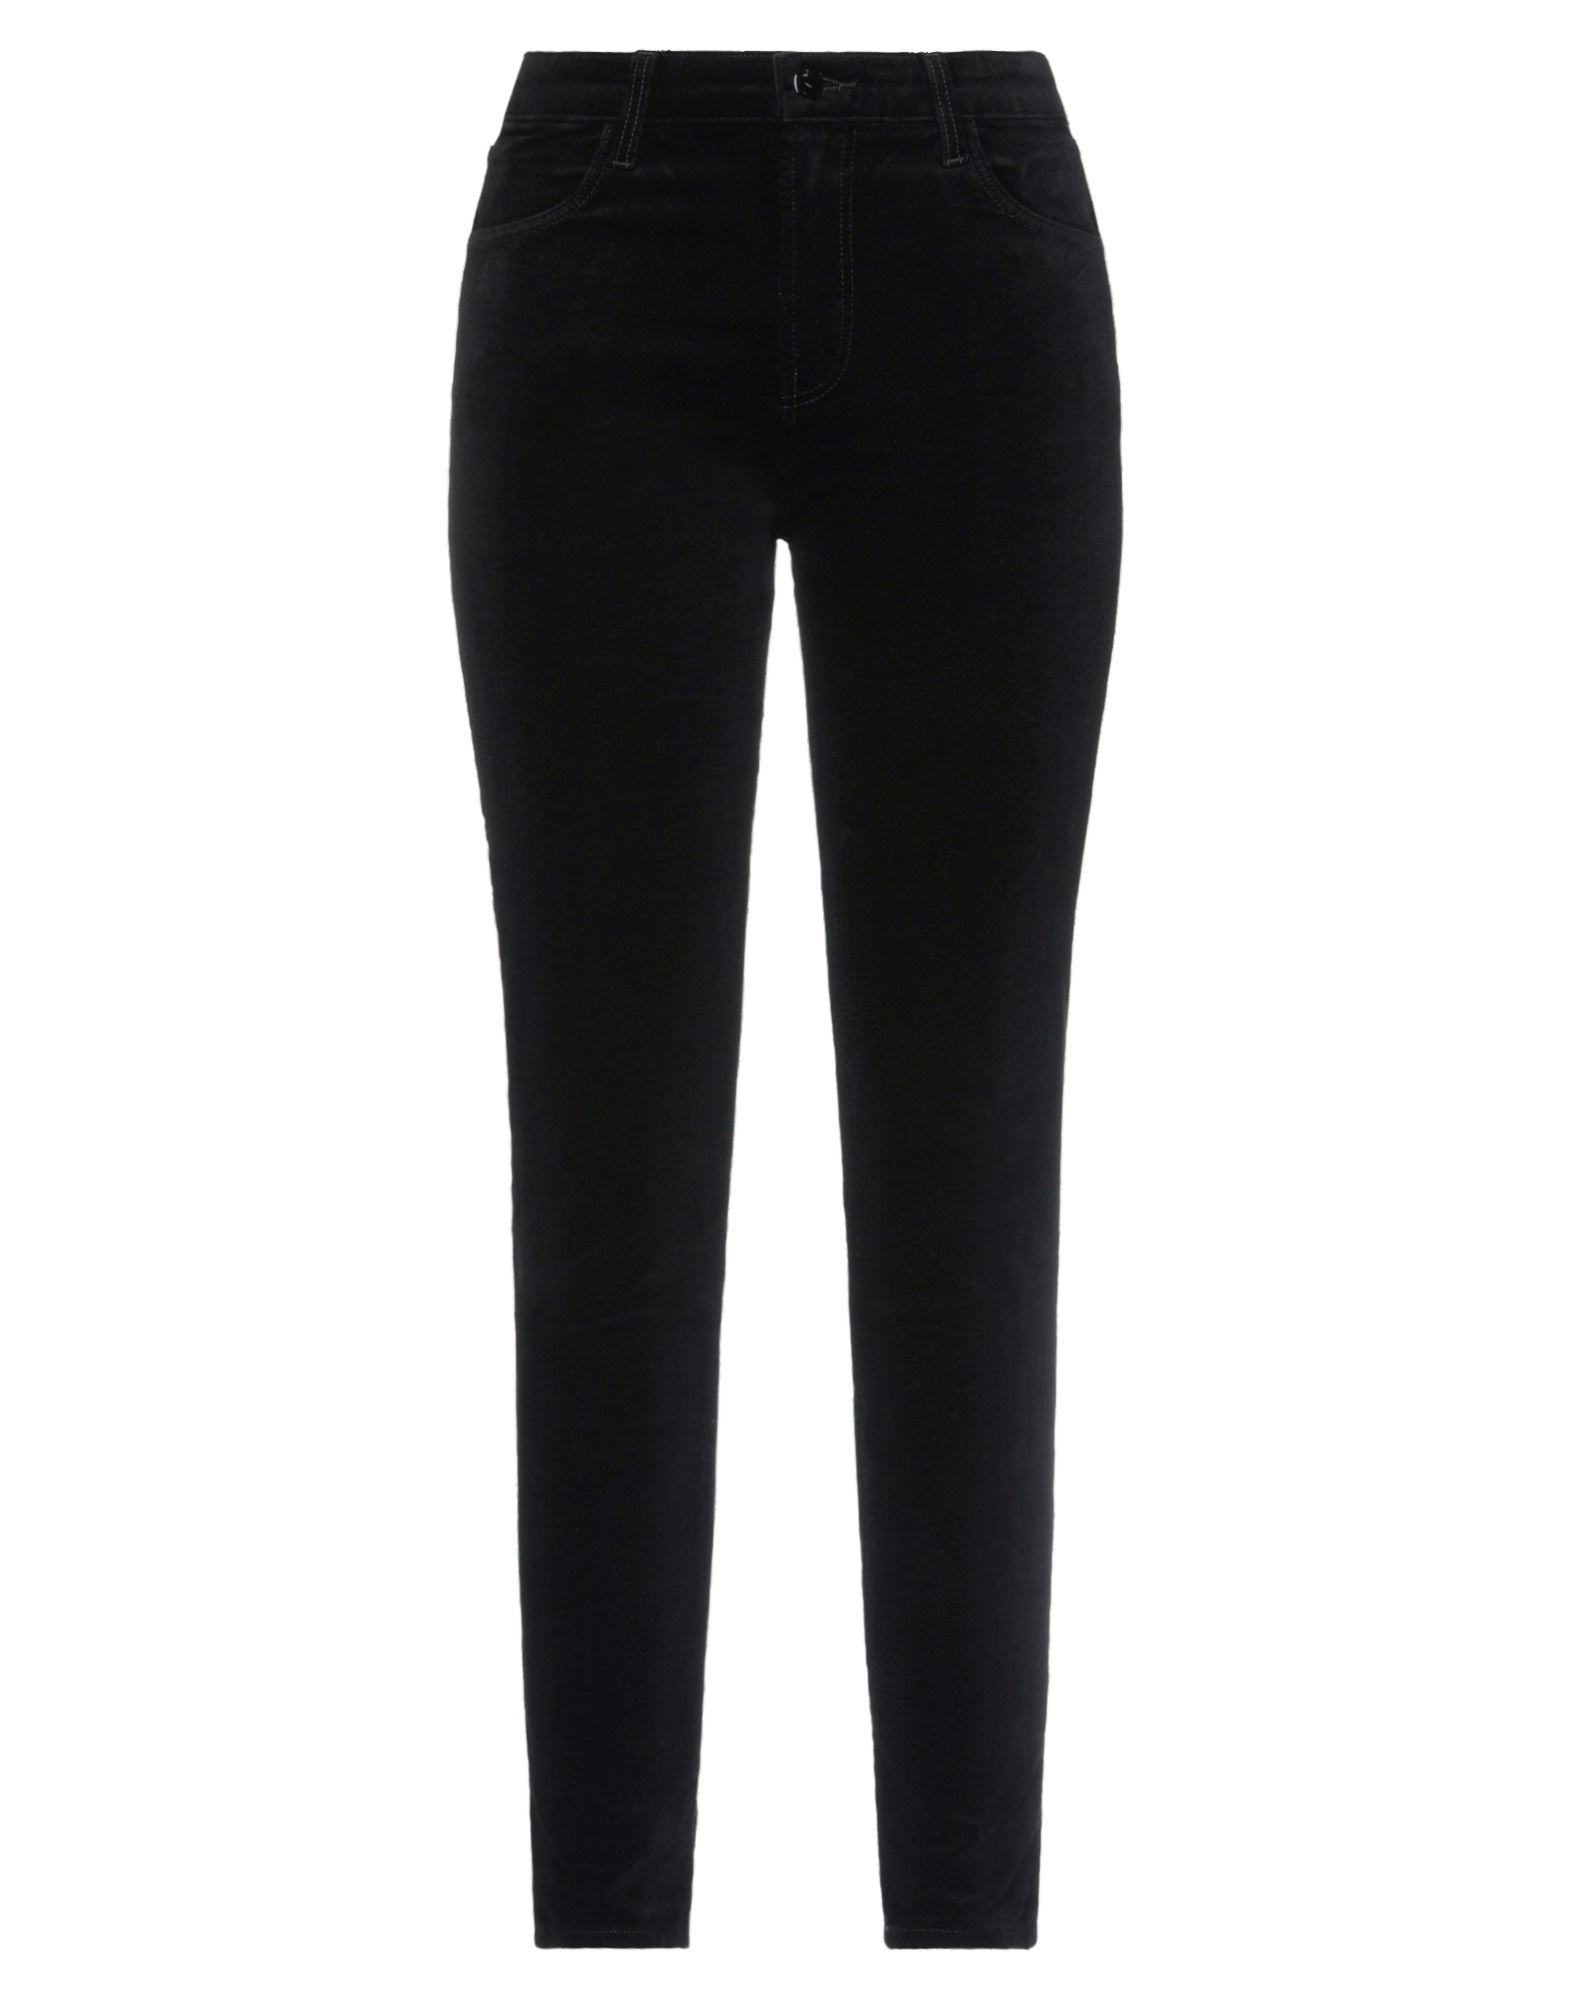 J Brand Woman Pants Black Size 24 Cotton, Modal, Elastane